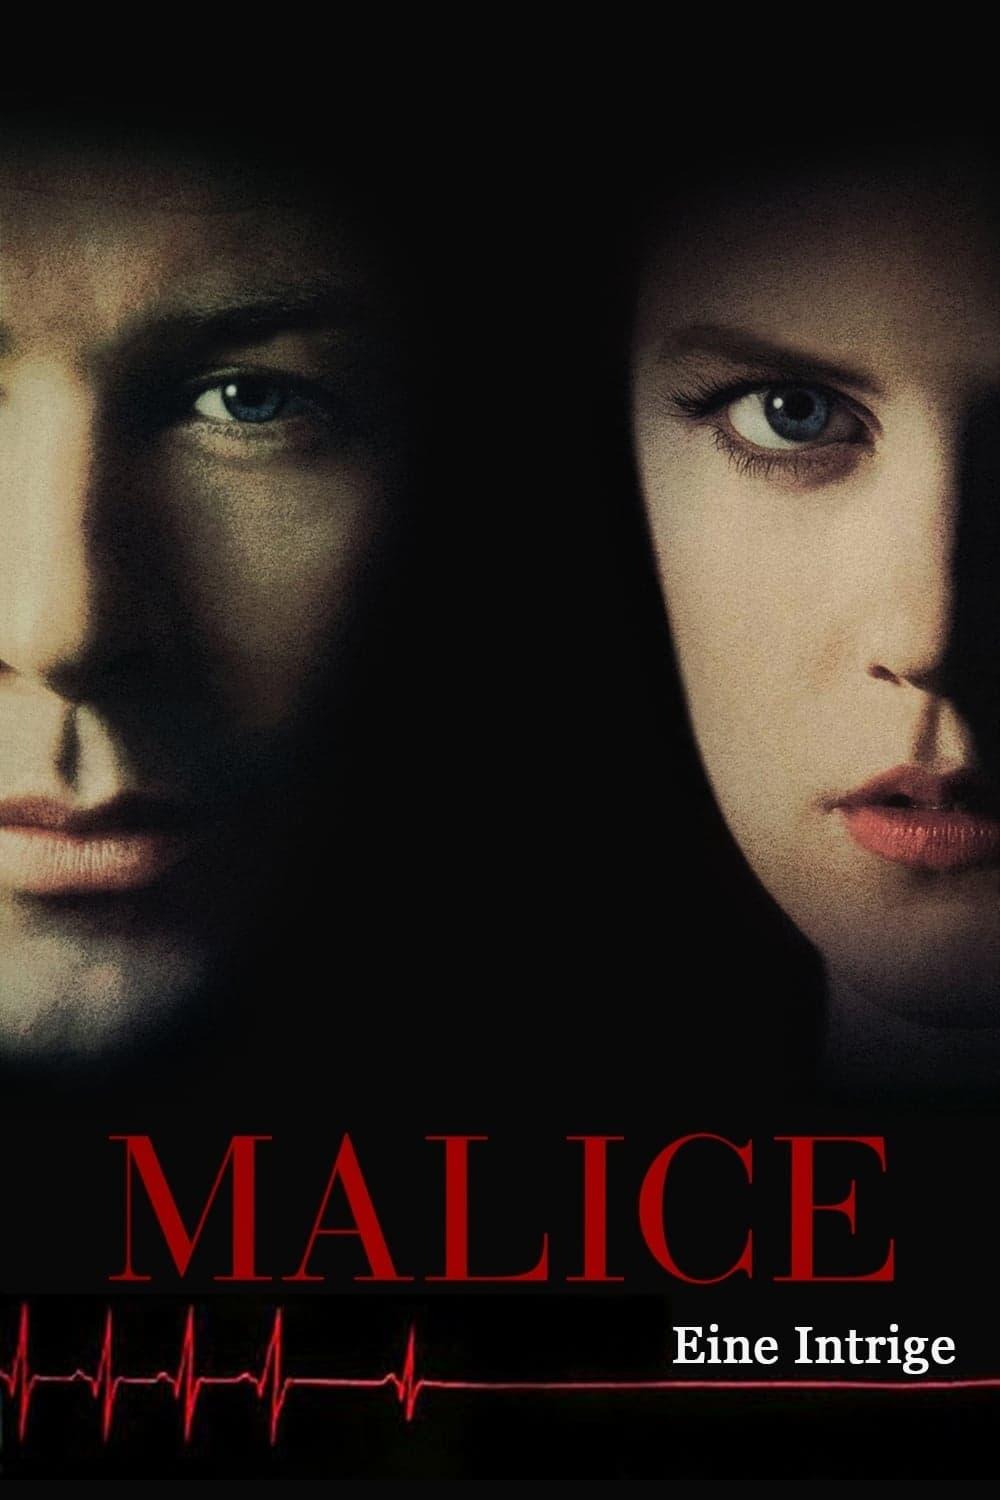 Malice - Eine Intrige poster